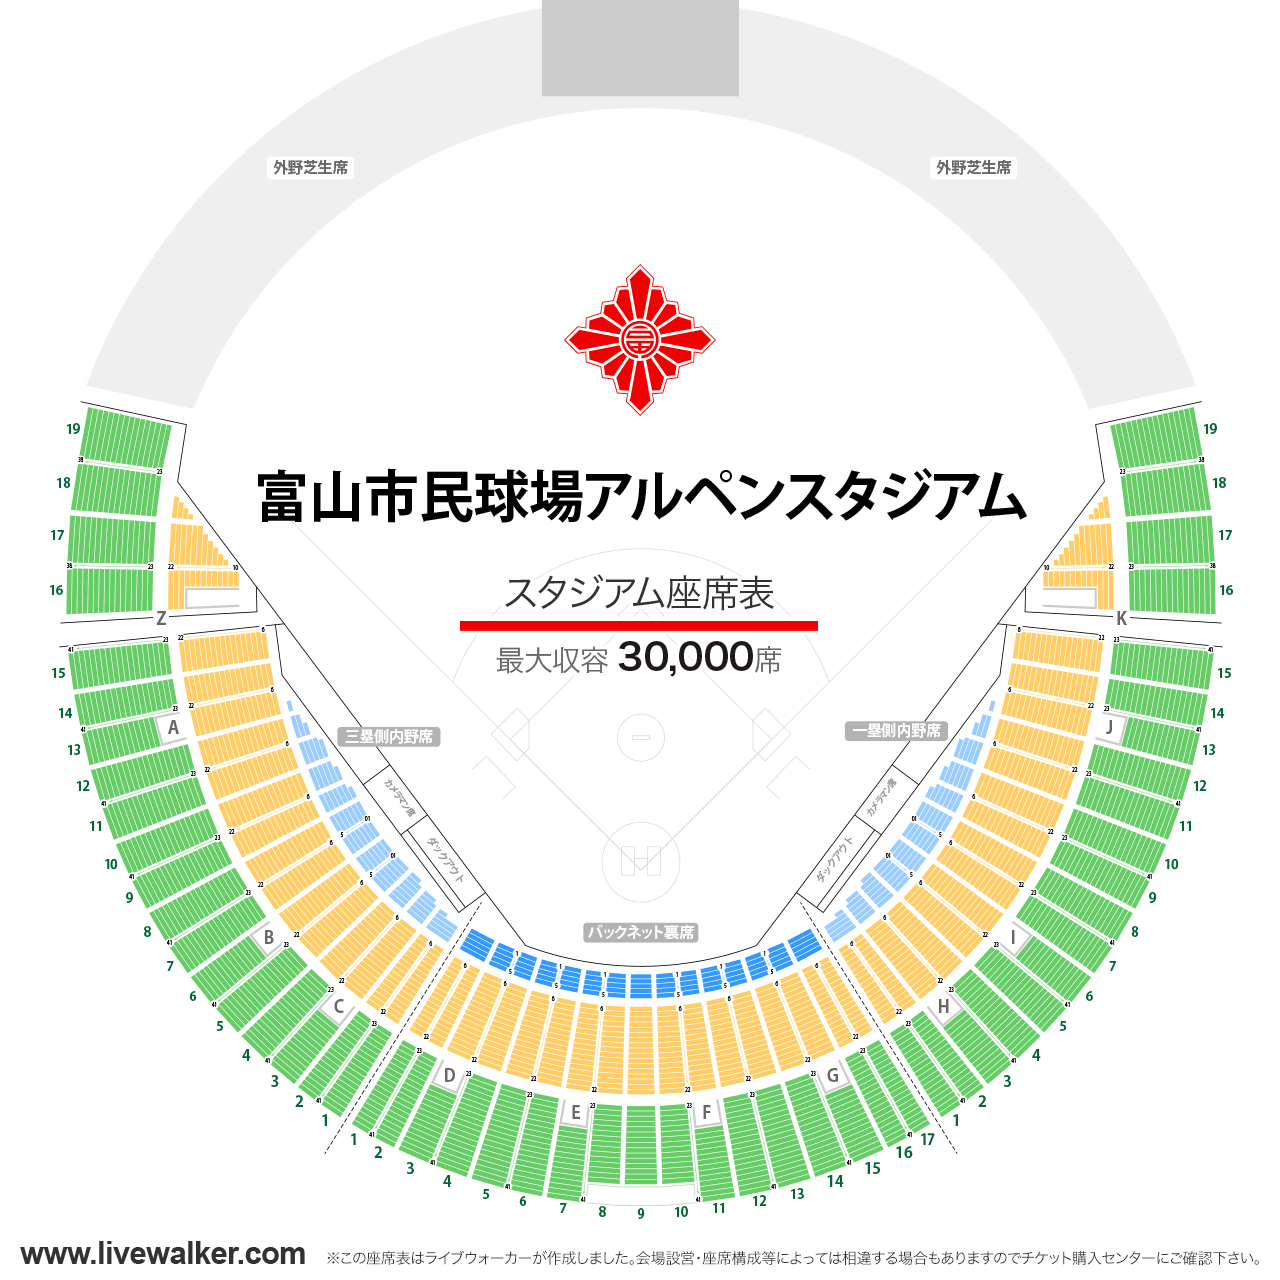 富山市民球場アルペンスタジアムスタジアムの座席表